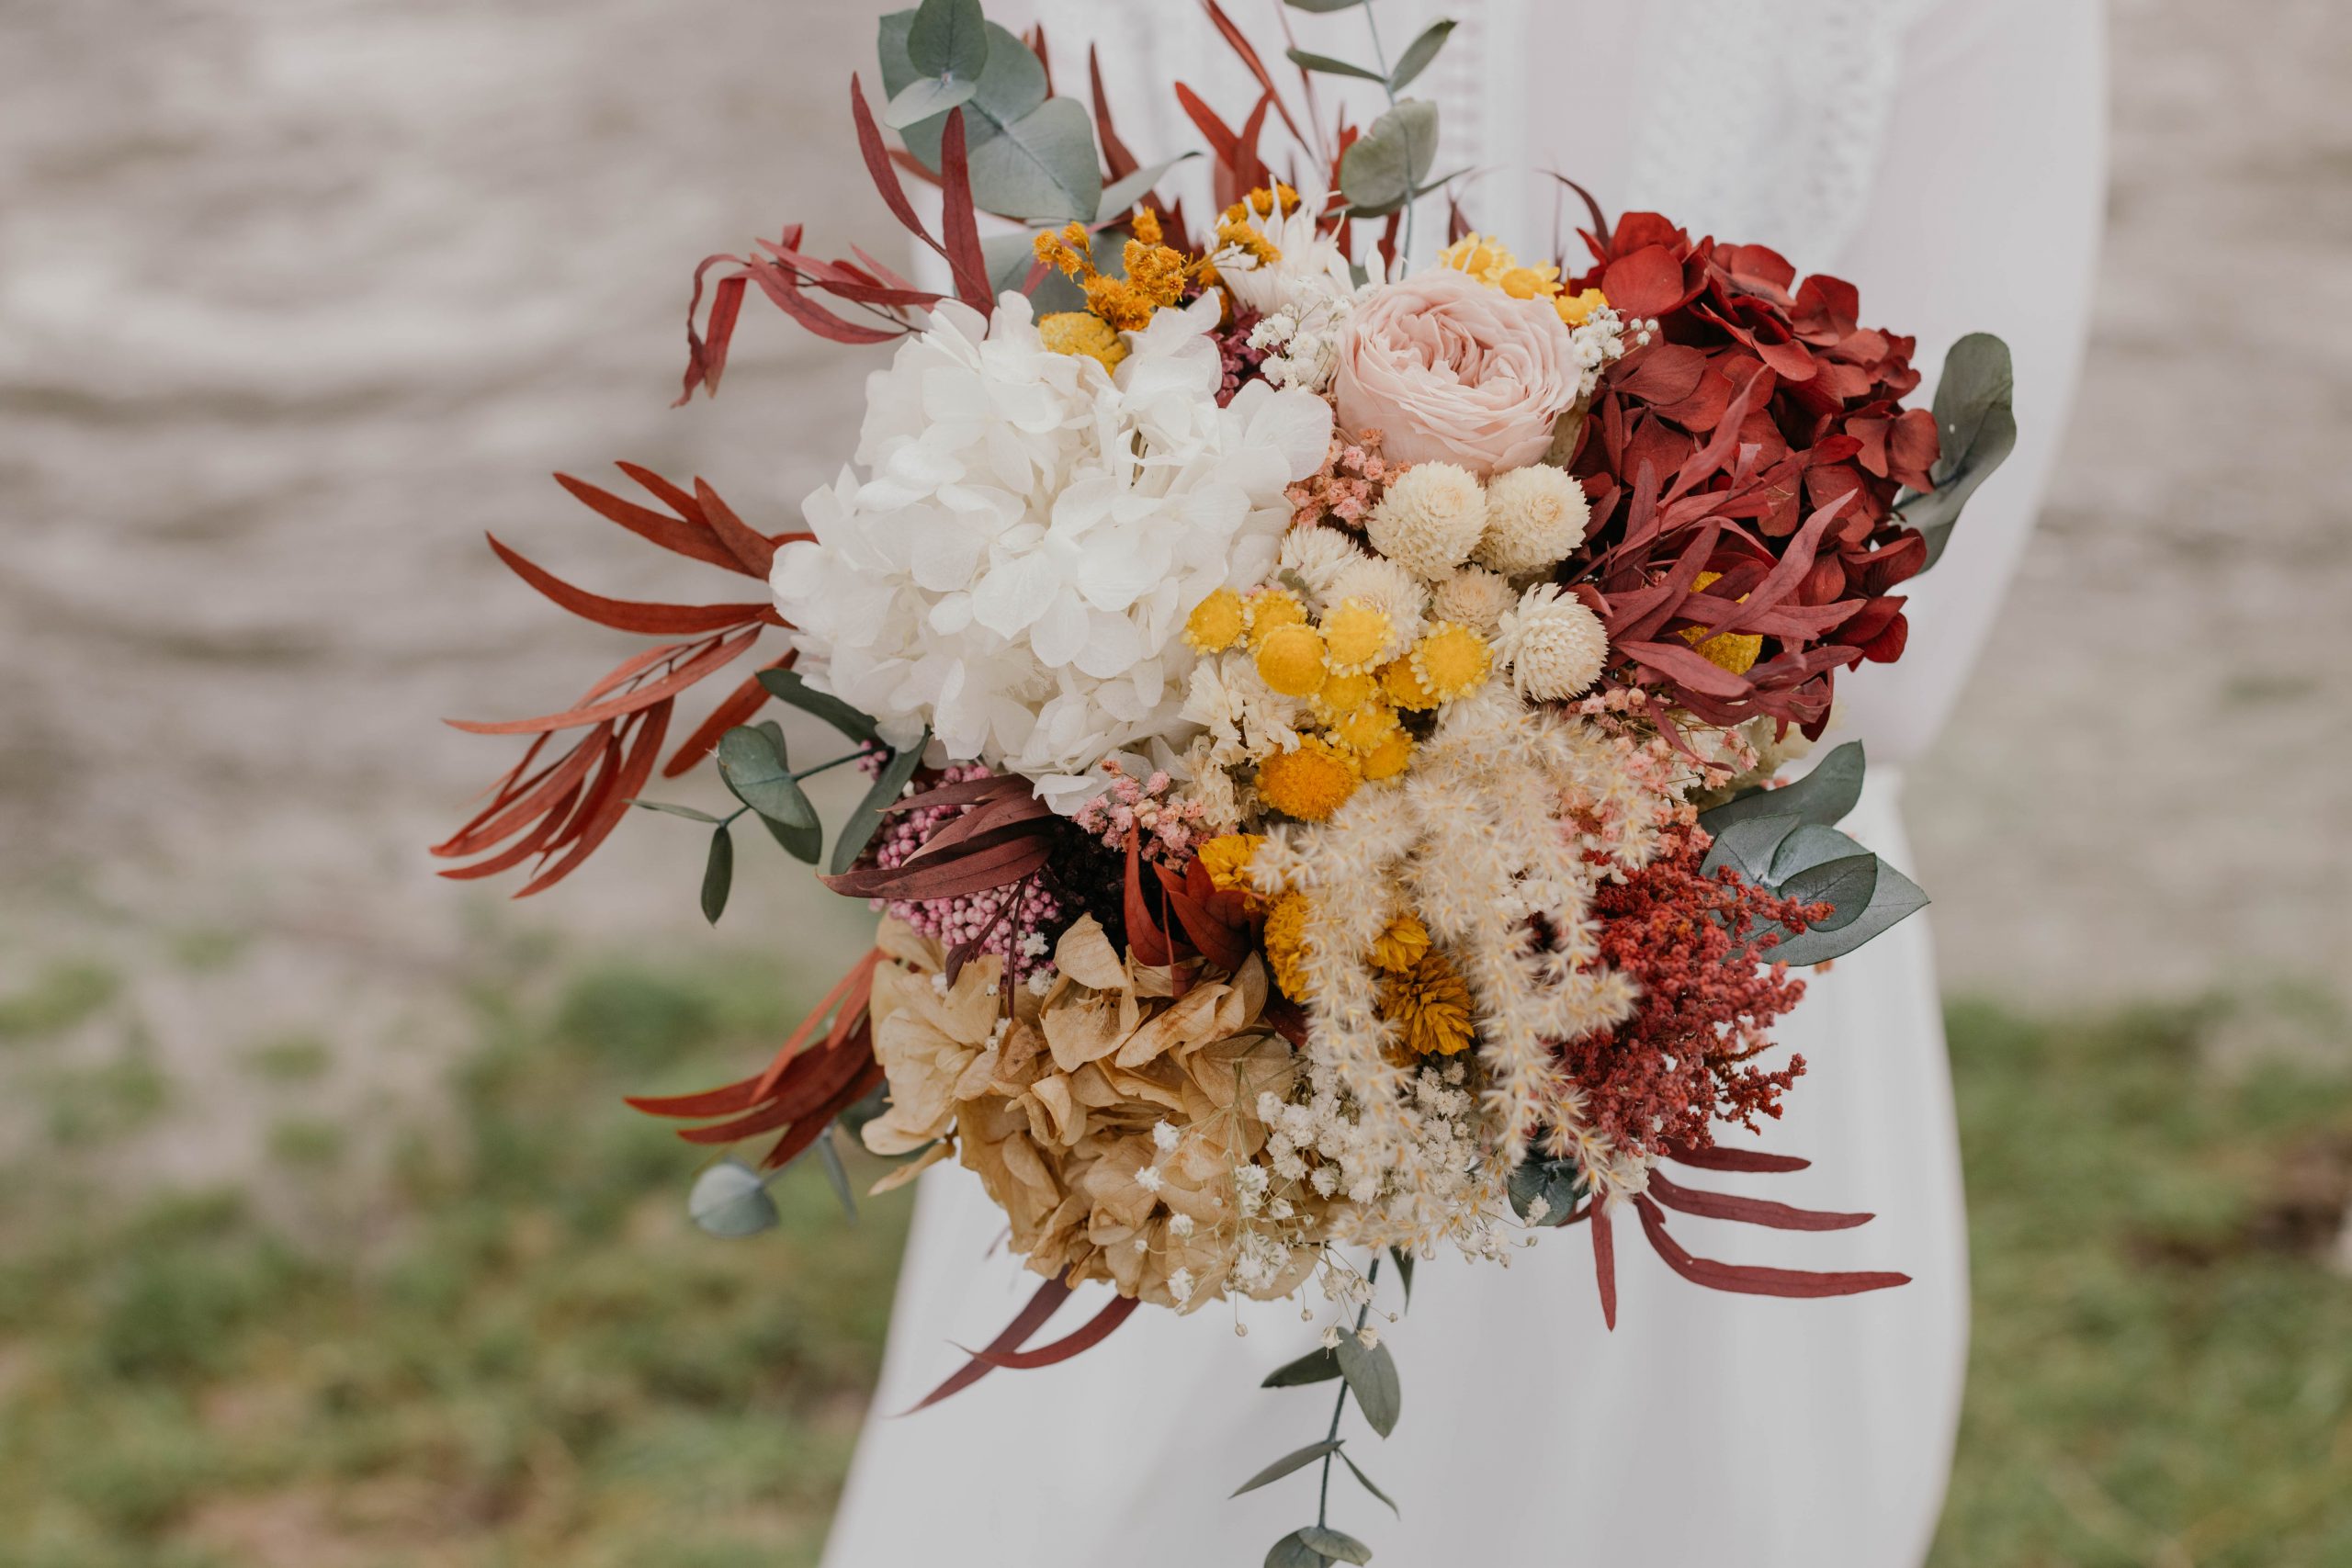 ETERNAL DISATI: Ramos de novia en flor preservada | Algo nuevo prestado y  azul